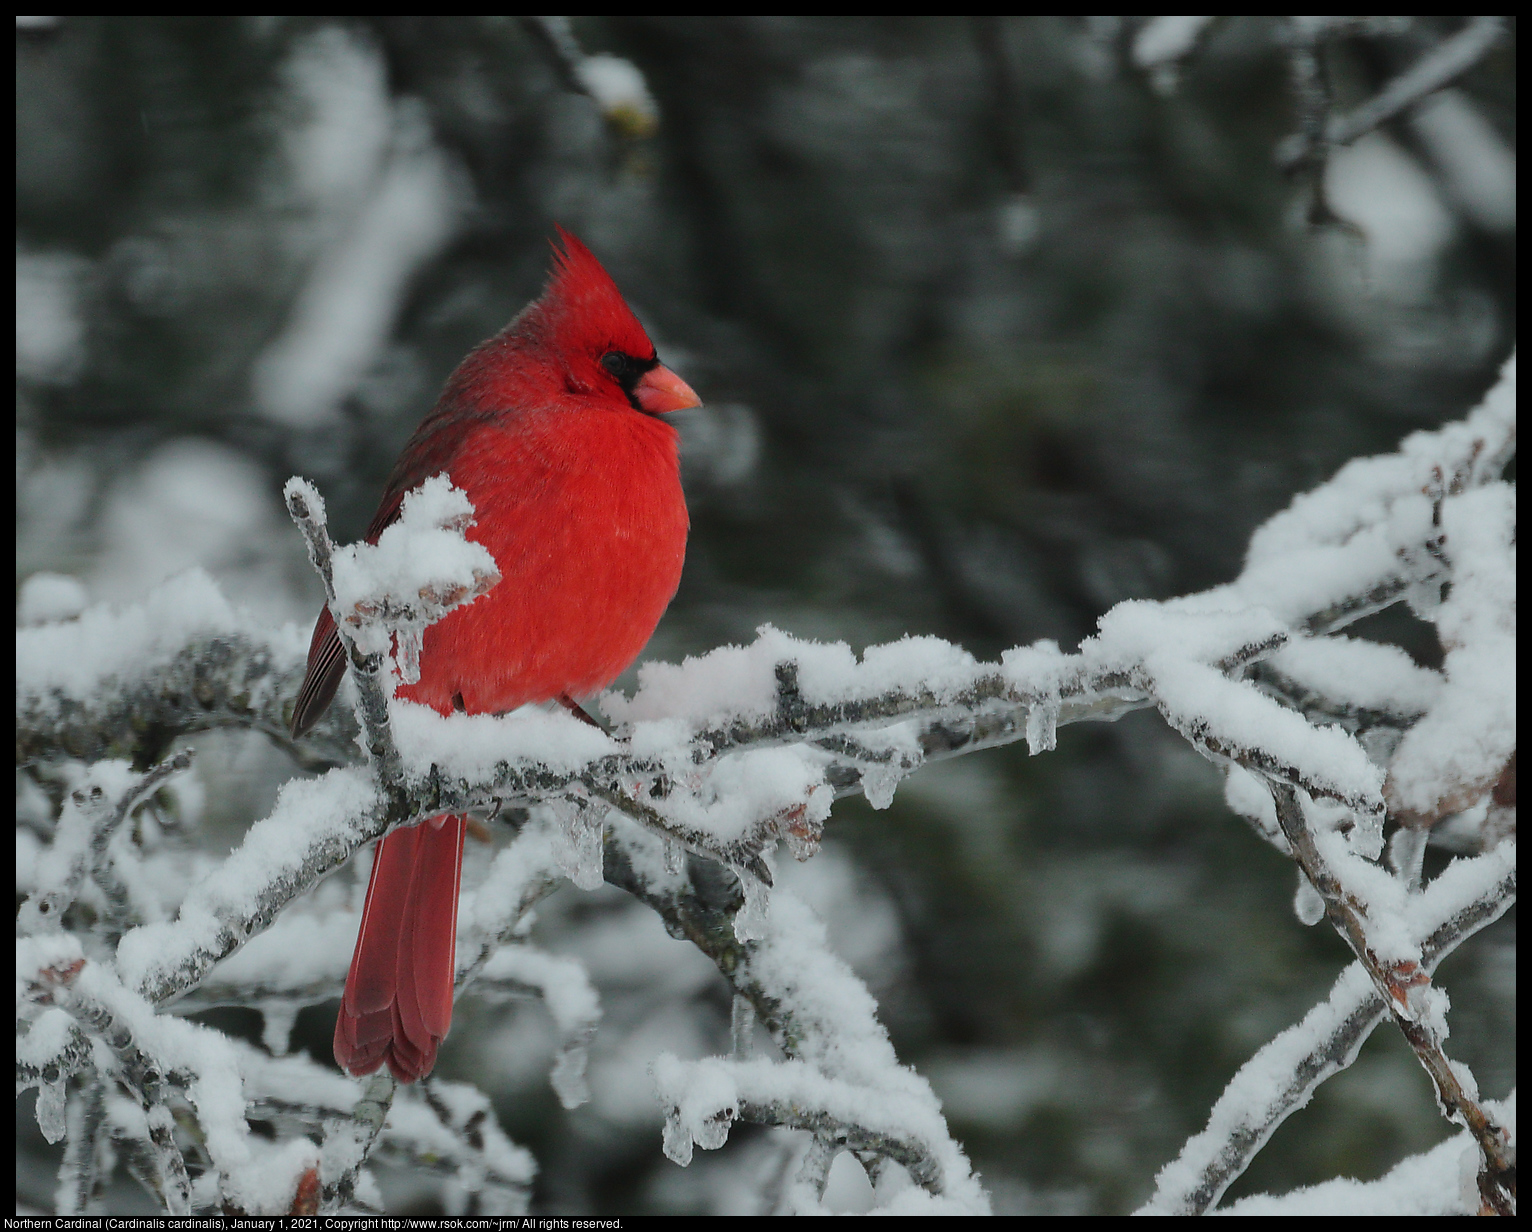 Northern Cardinal (Cardinalis cardinalis), January 1, 2021